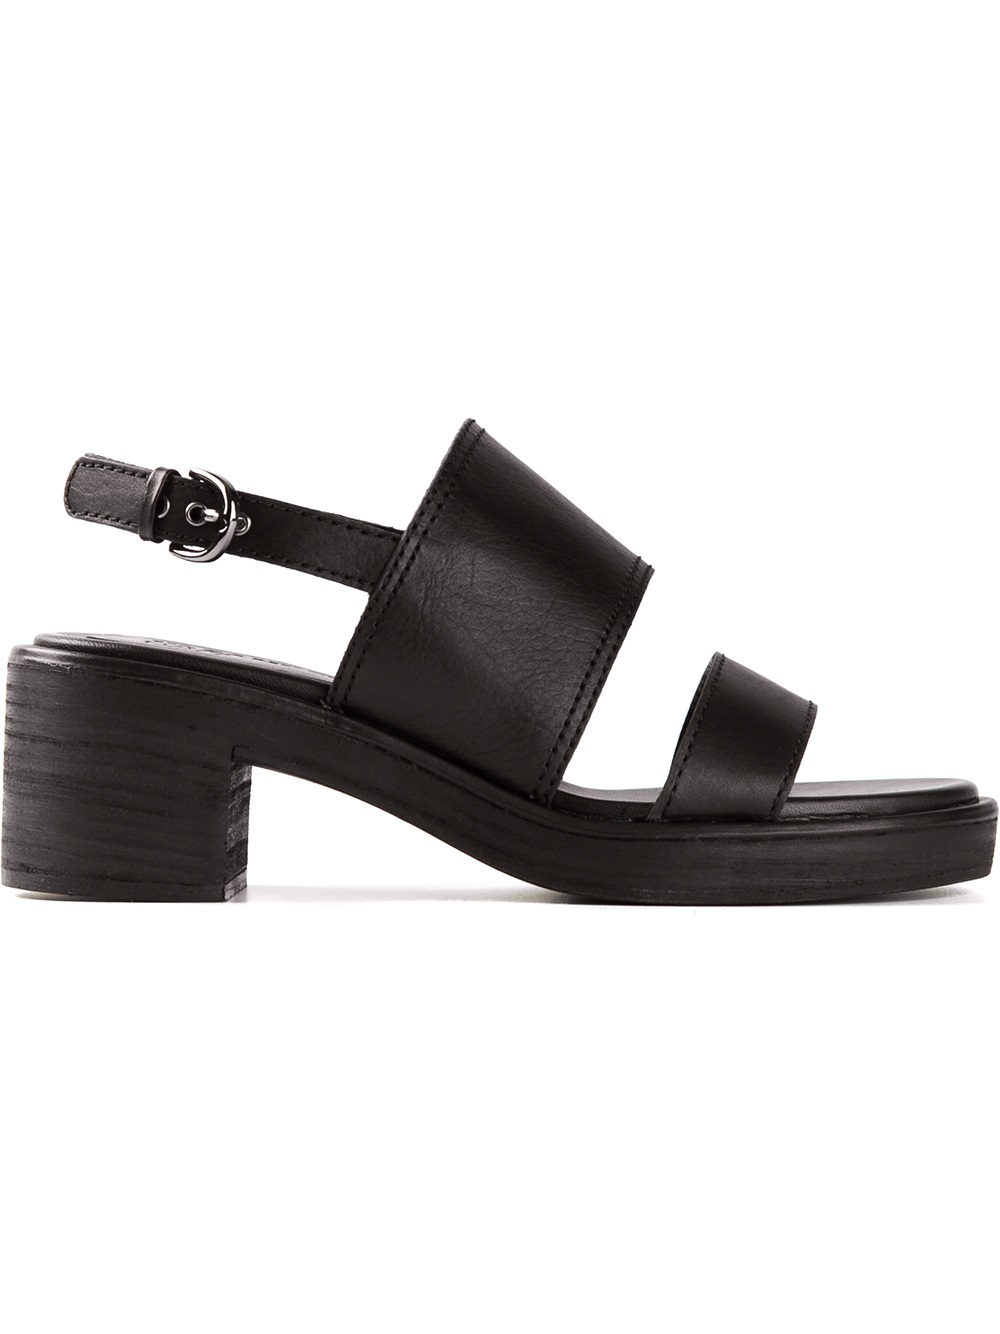 Lyst - Jil Sander Navy Chunky Heel Sandals in Black